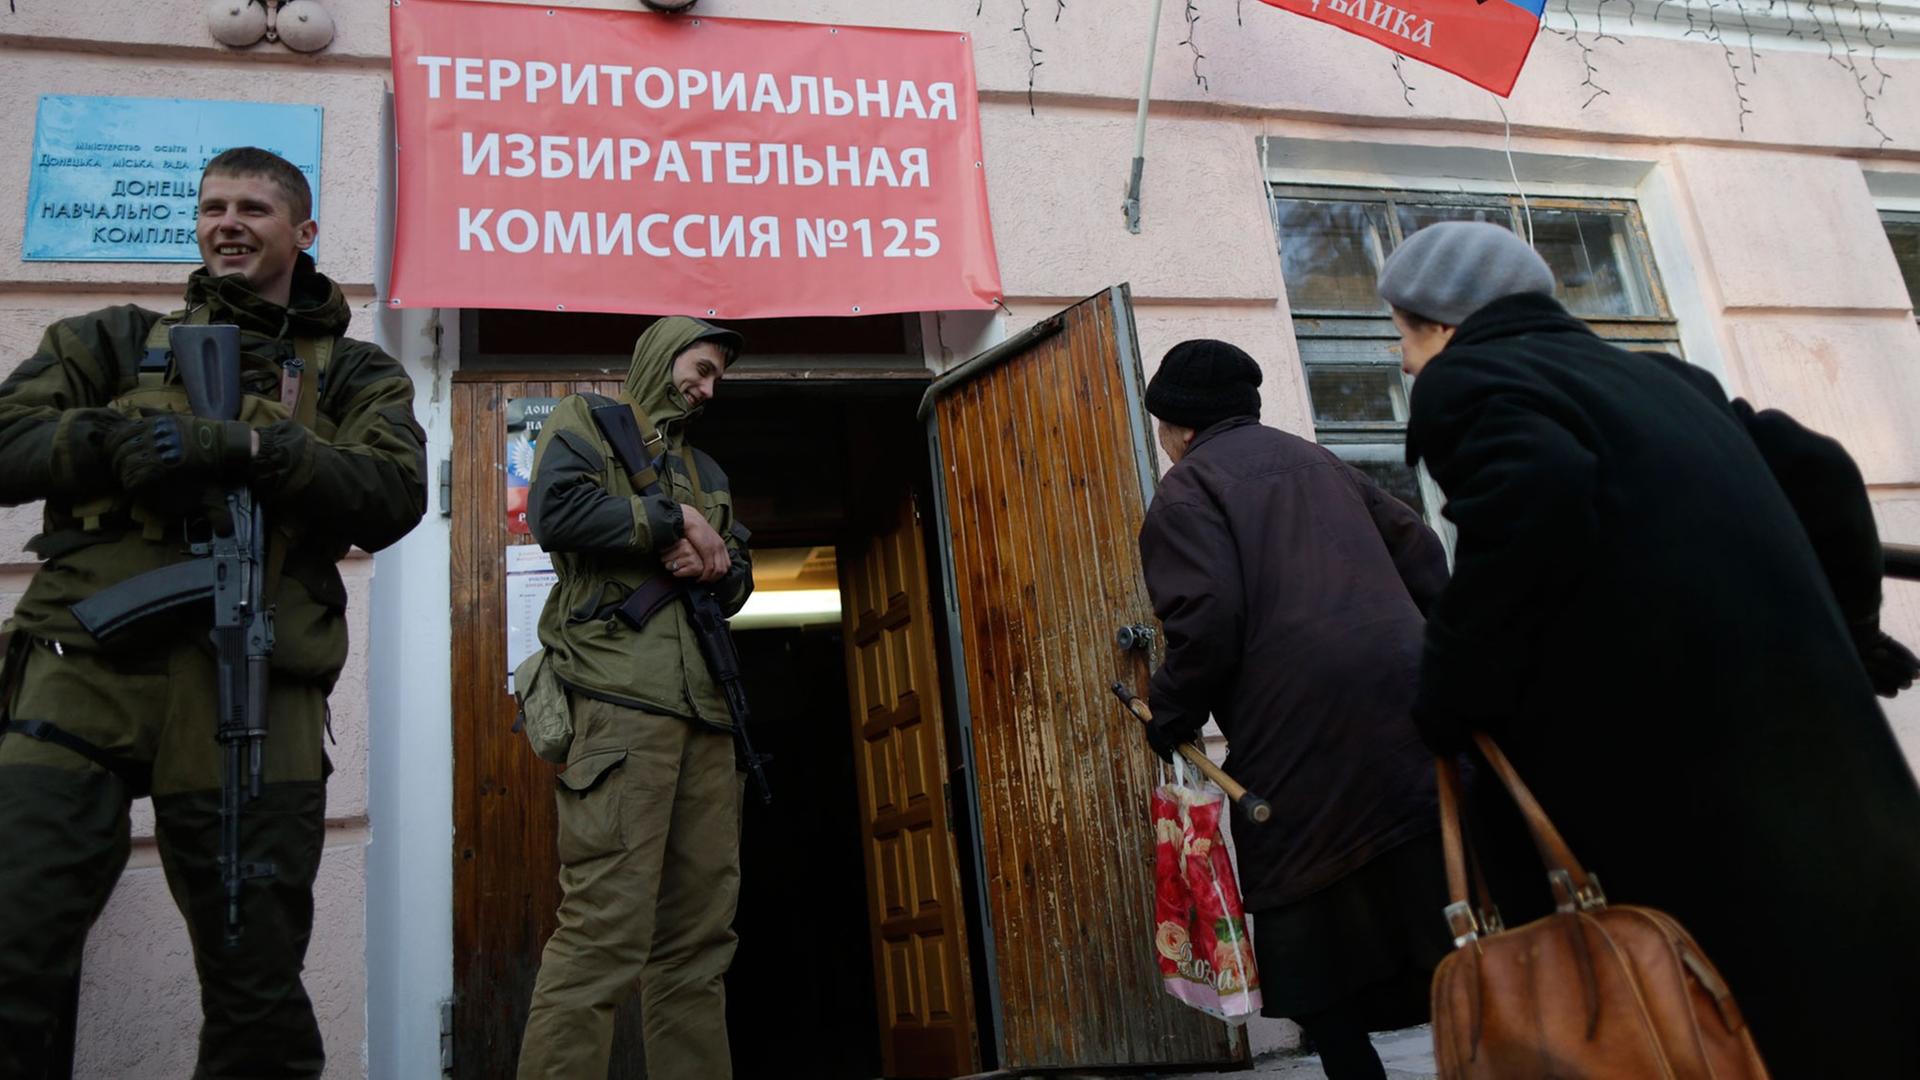 Zwei Frauen gehen in ein Wahllokal in der ostukrainischen Stadt Donezk. Zwei bewaffnete Männer in Uniformen stehen rechts und links des Eingangs